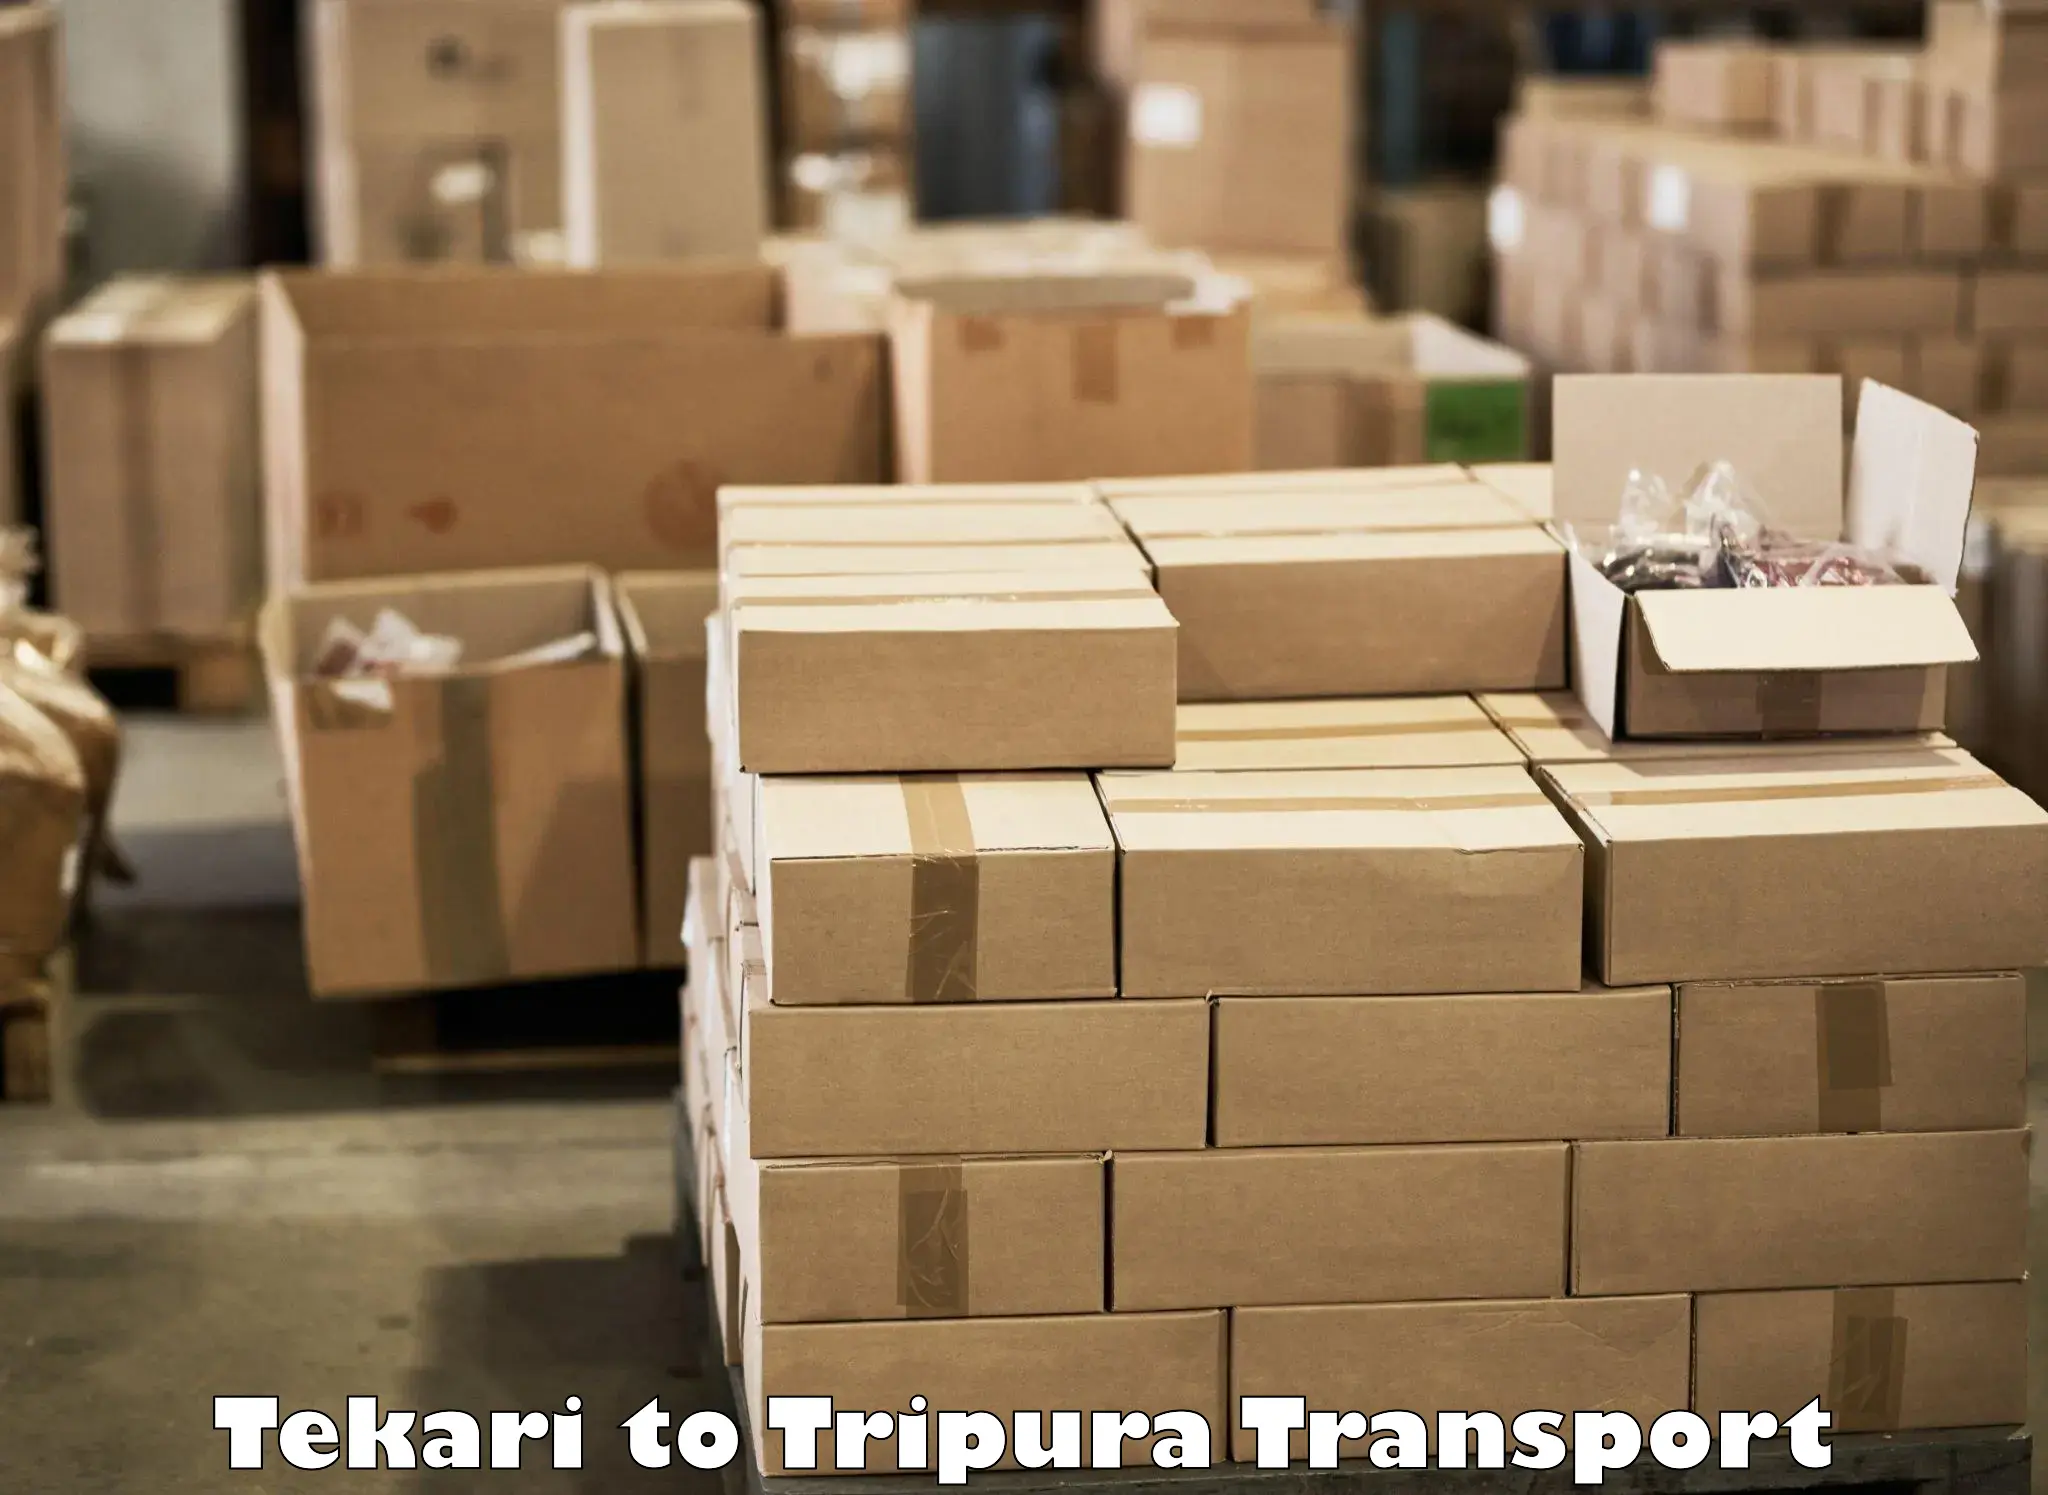 Commercial transport service Tekari to Manu Bazar